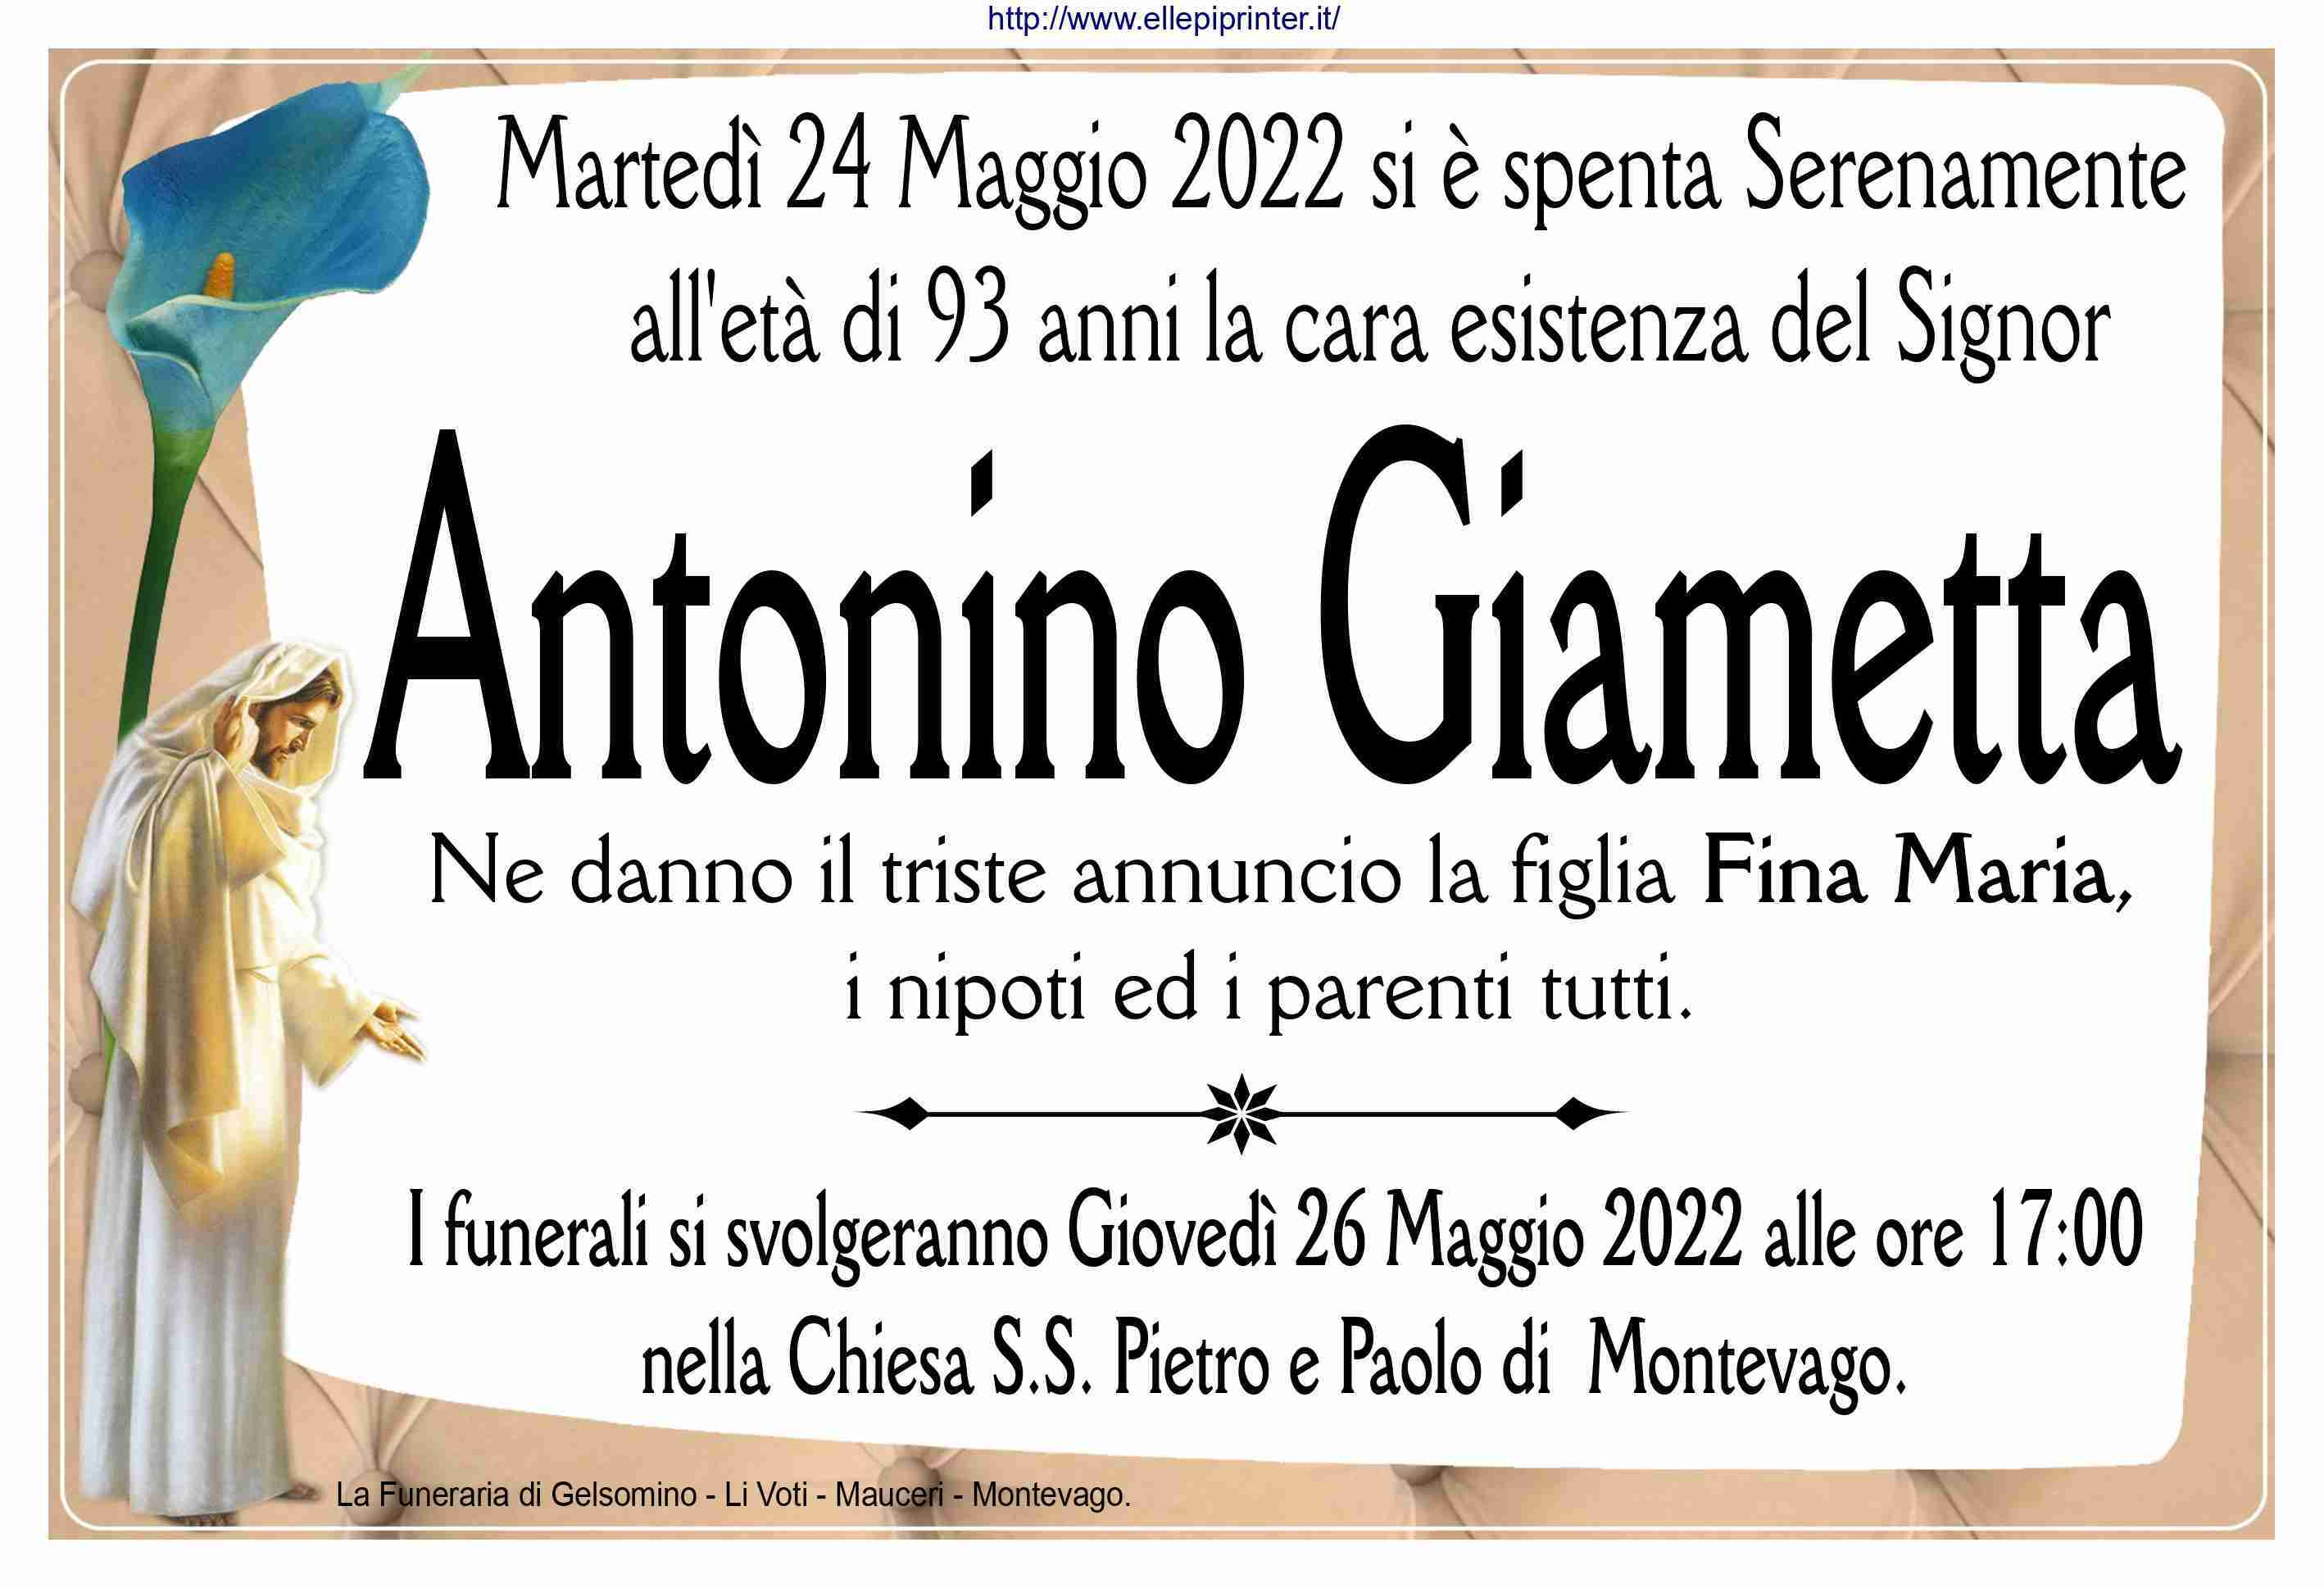 Antonino Giametta